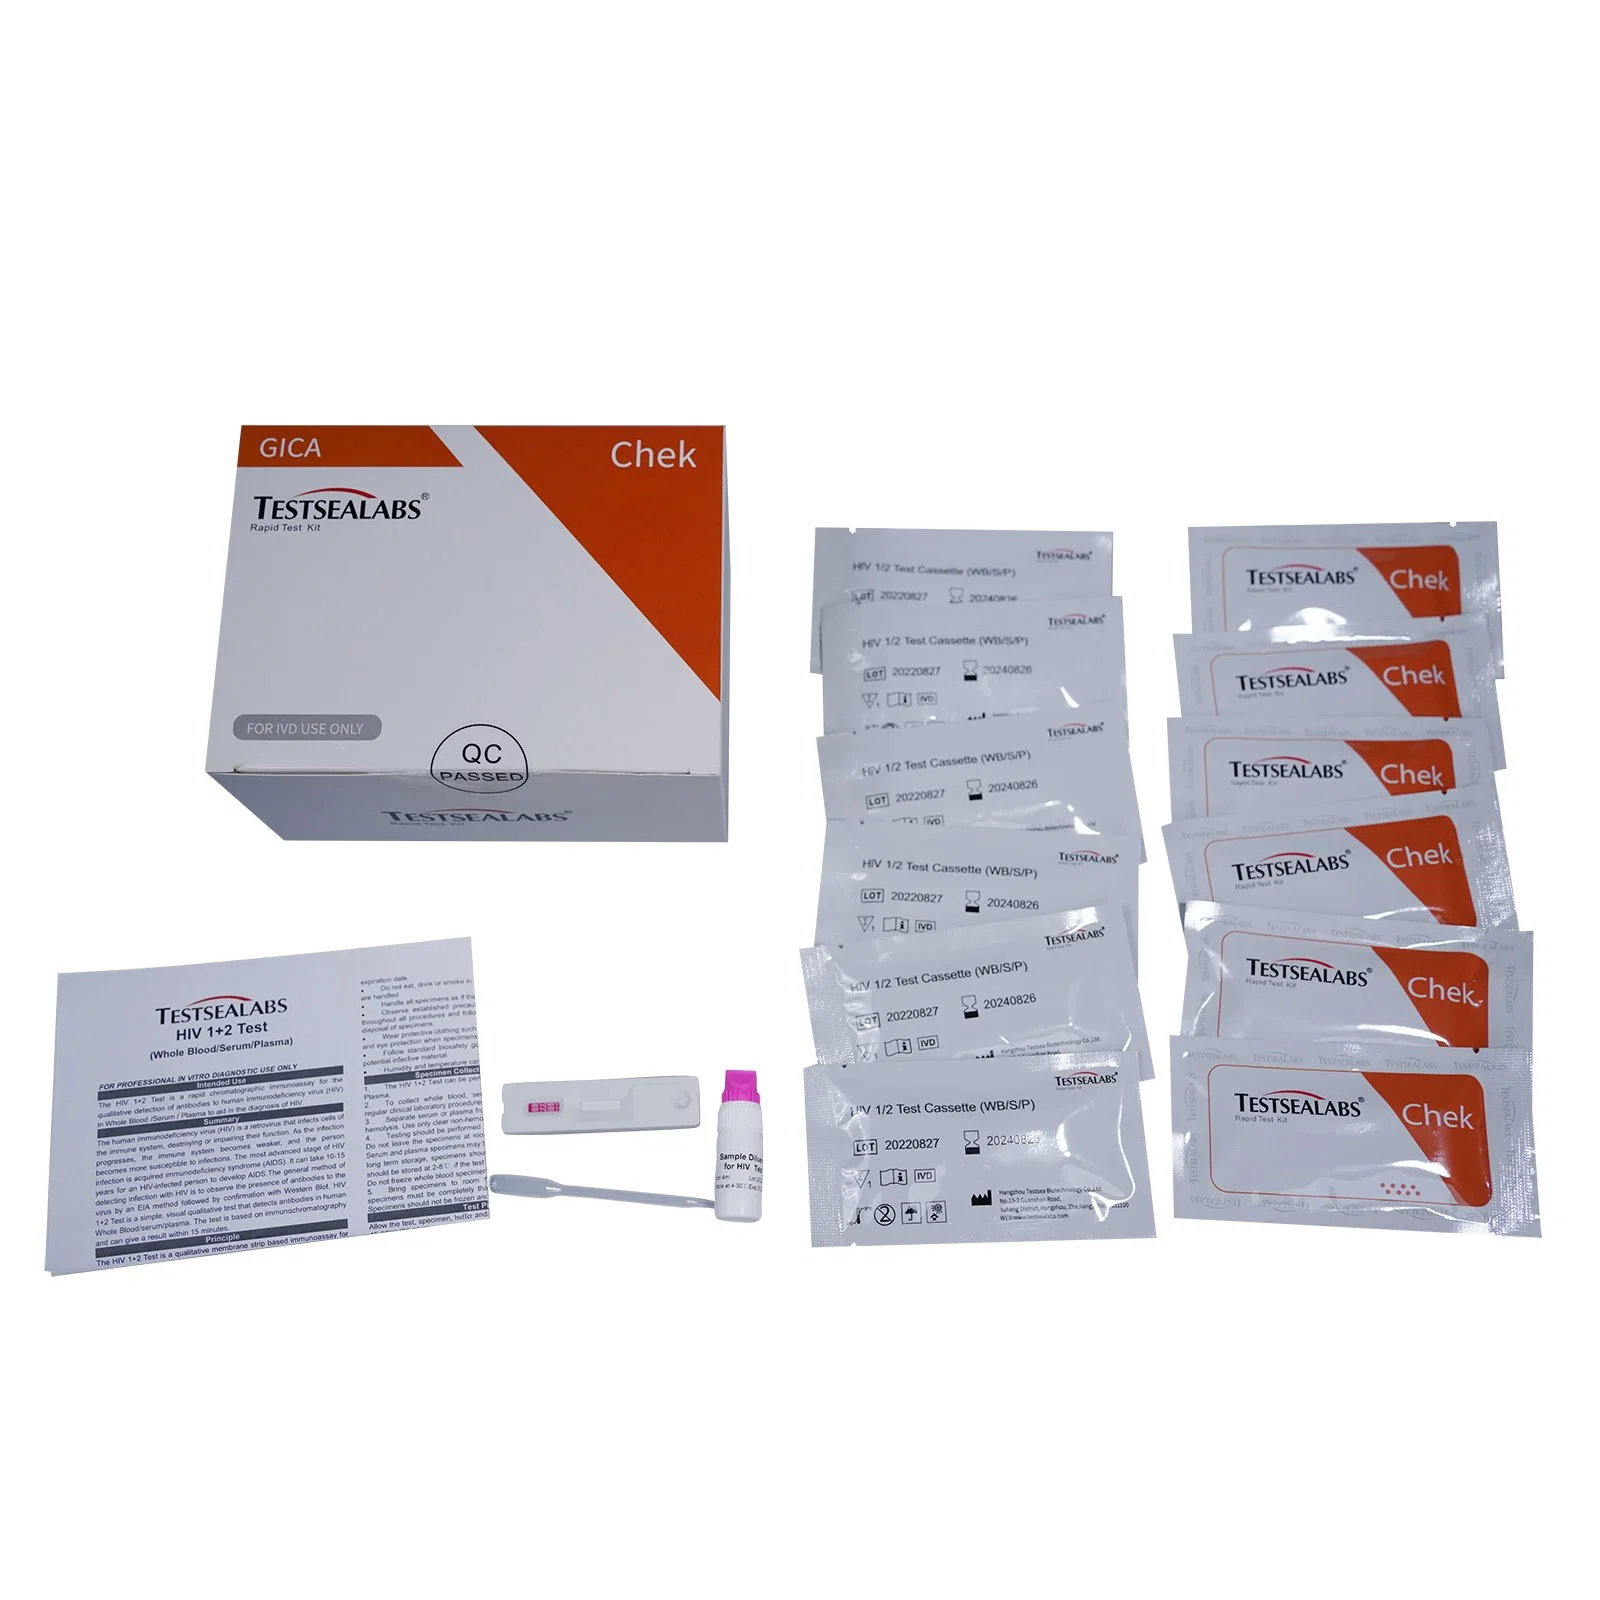 HIV-Bluttest/Diagnose HIV 1/2 Antigen Schnellteststreifen-Kit Für Menschen